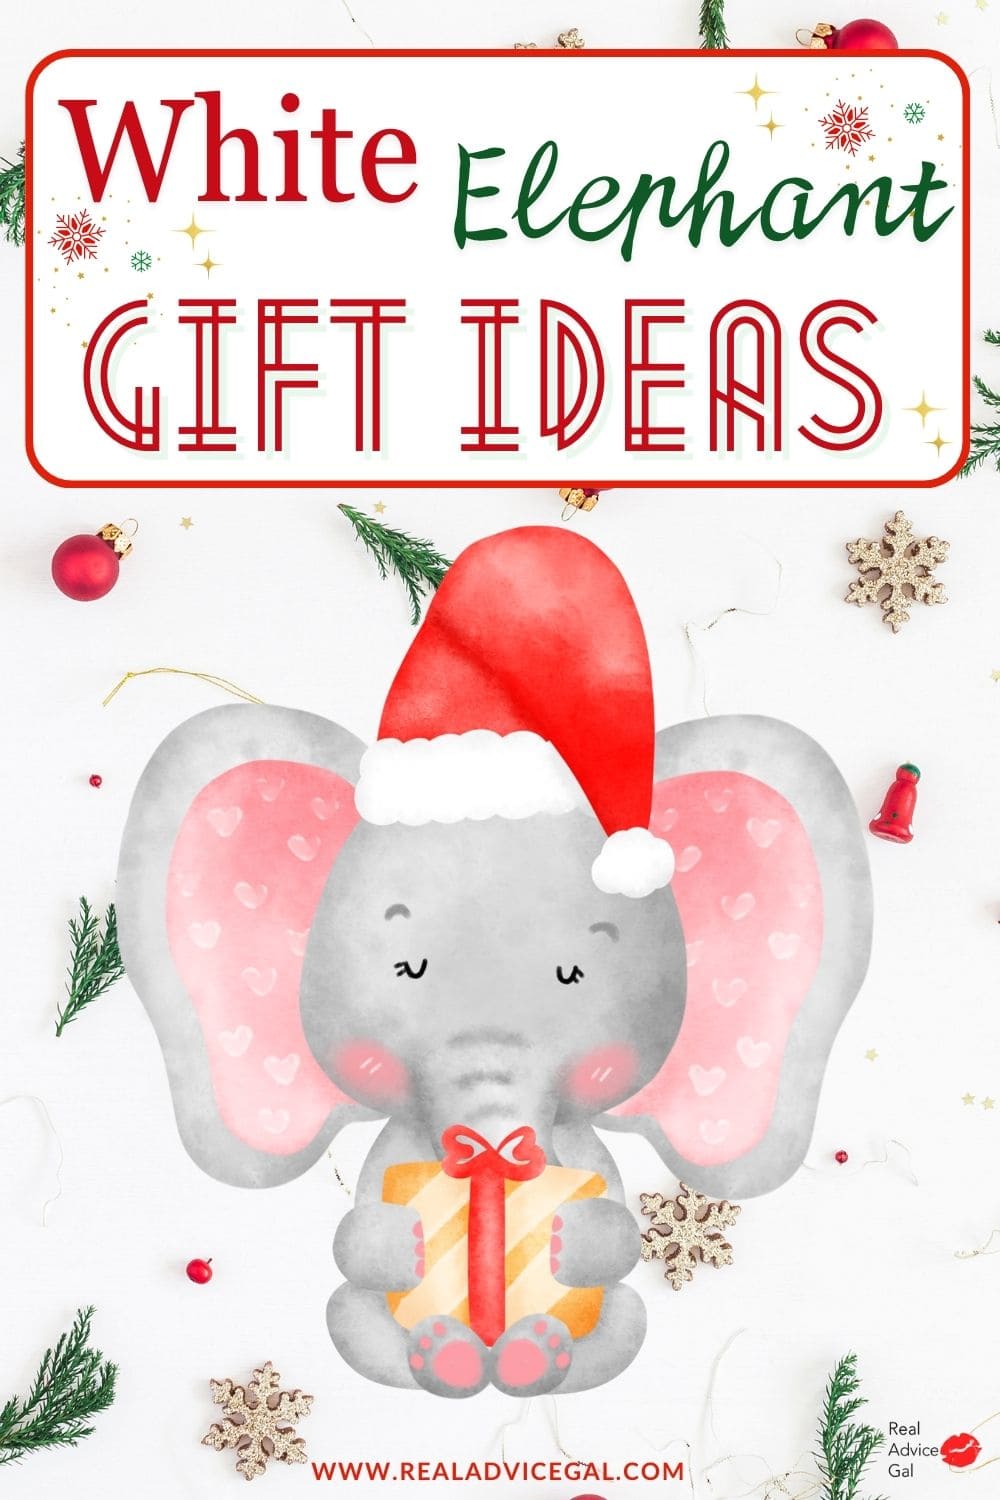 White Elephant Party Gift ideas